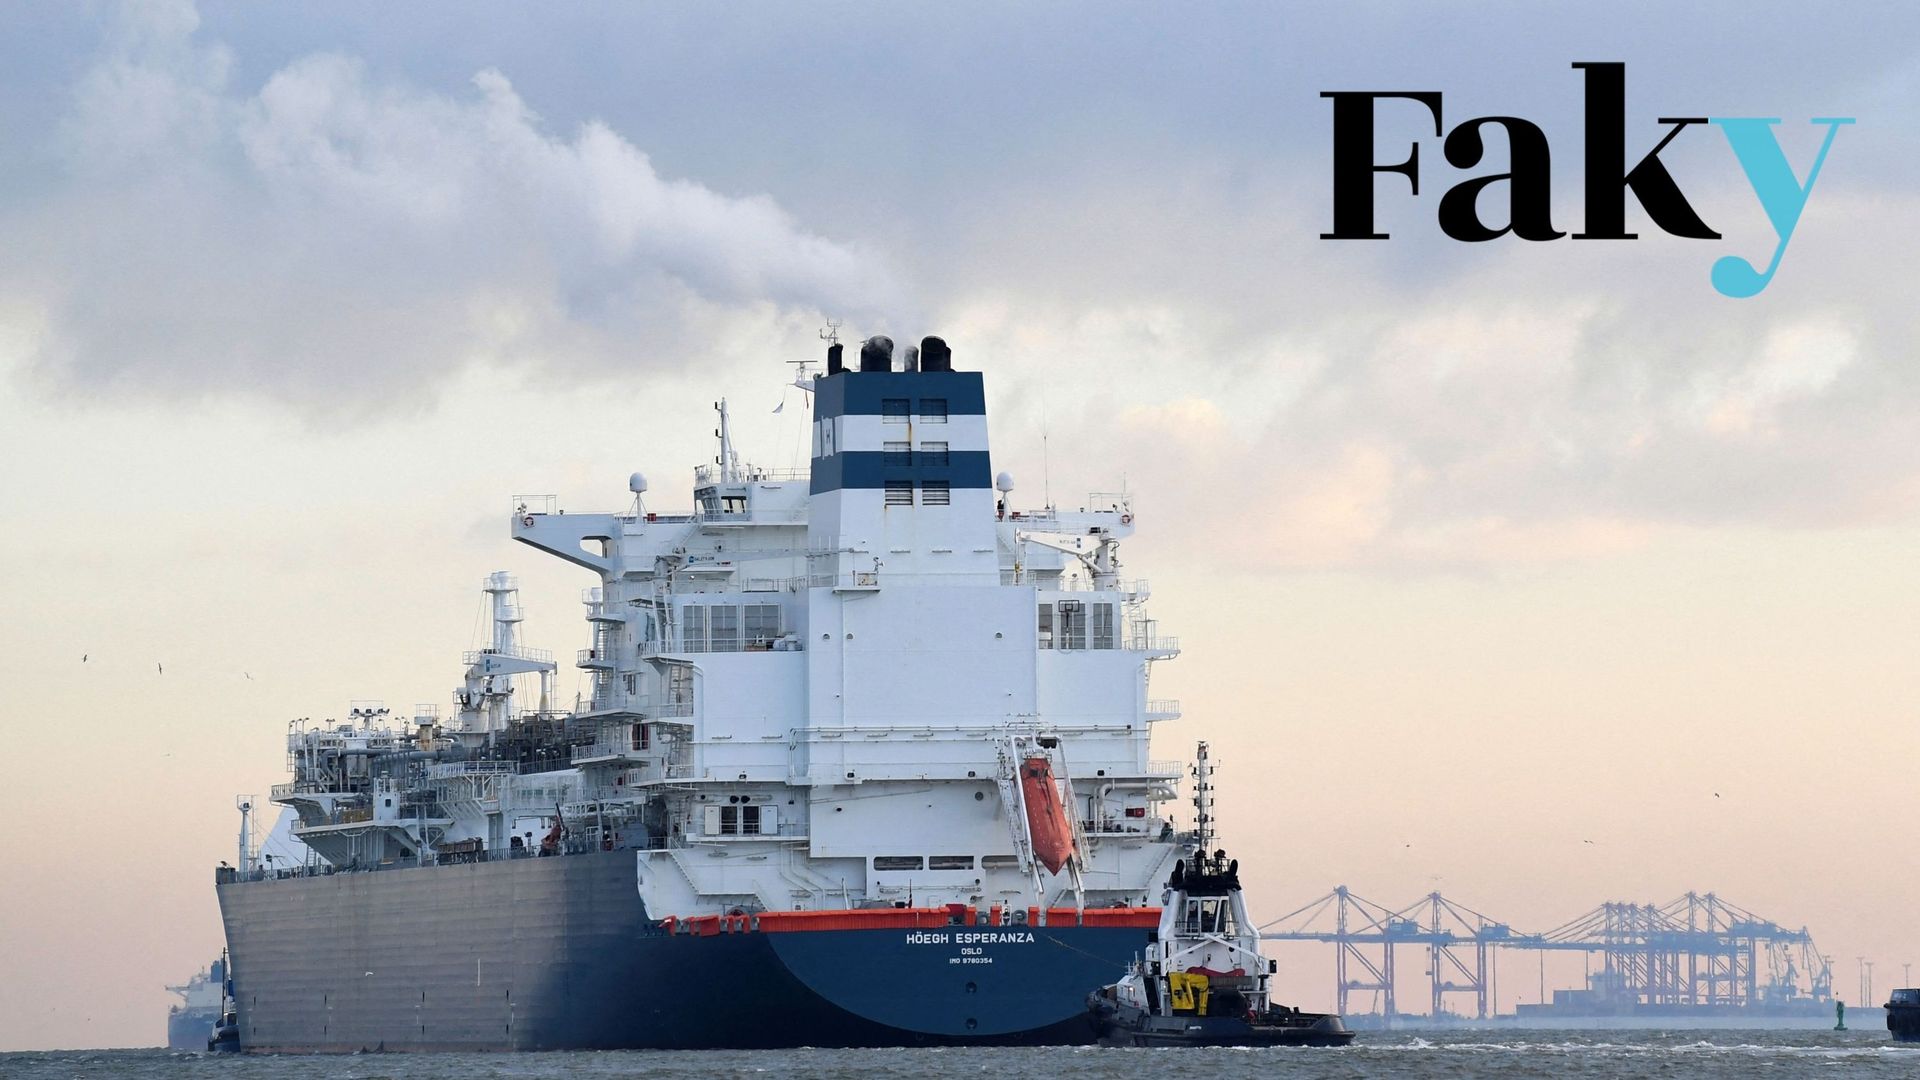 Le navire FSRU (unité flottante de stockage et de regazéification) "Hoegh Esperanza" est guidé par des remorqueurs lors de son arrivée au port de Wilhelmshaven, en Allemagne, le 15 décembre 2022. L'Allemagne s'apprête à recevoir son premier terminal gazie